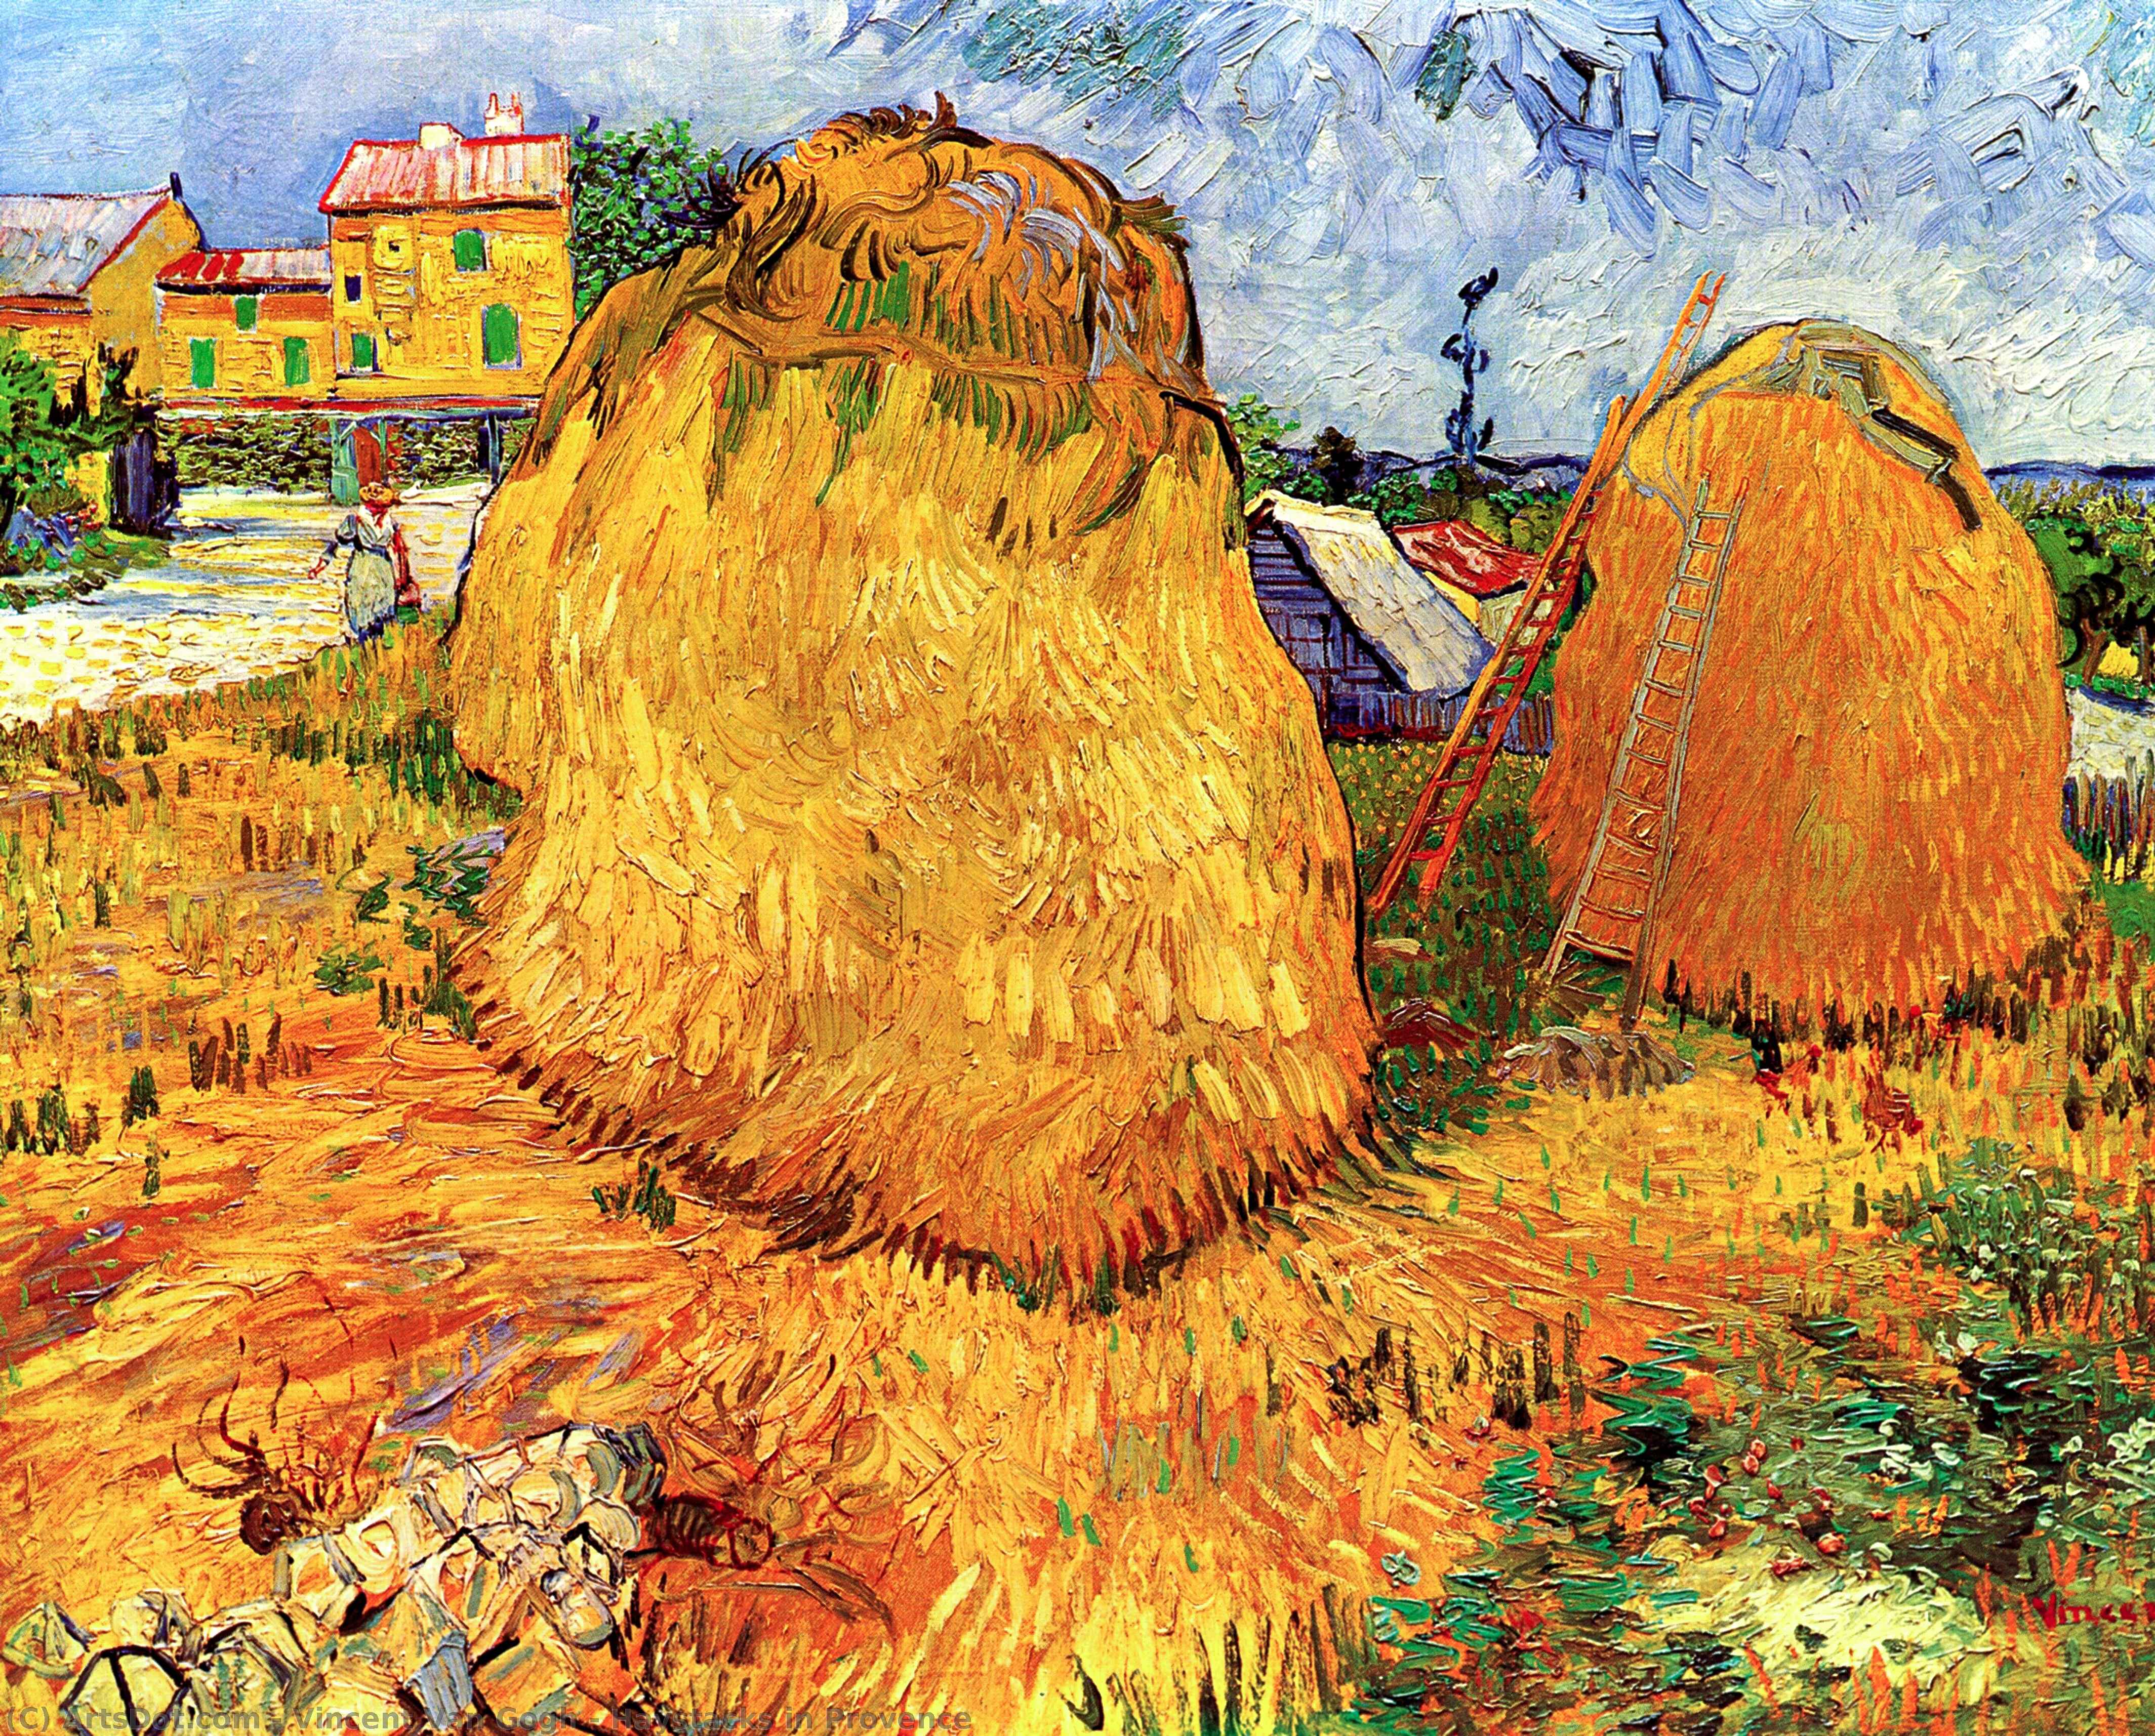 Achat Reproductions De Peintures Haystacks en Provence, 1888 de Vincent Van Gogh (1853-1890, Netherlands) | ArtsDot.com